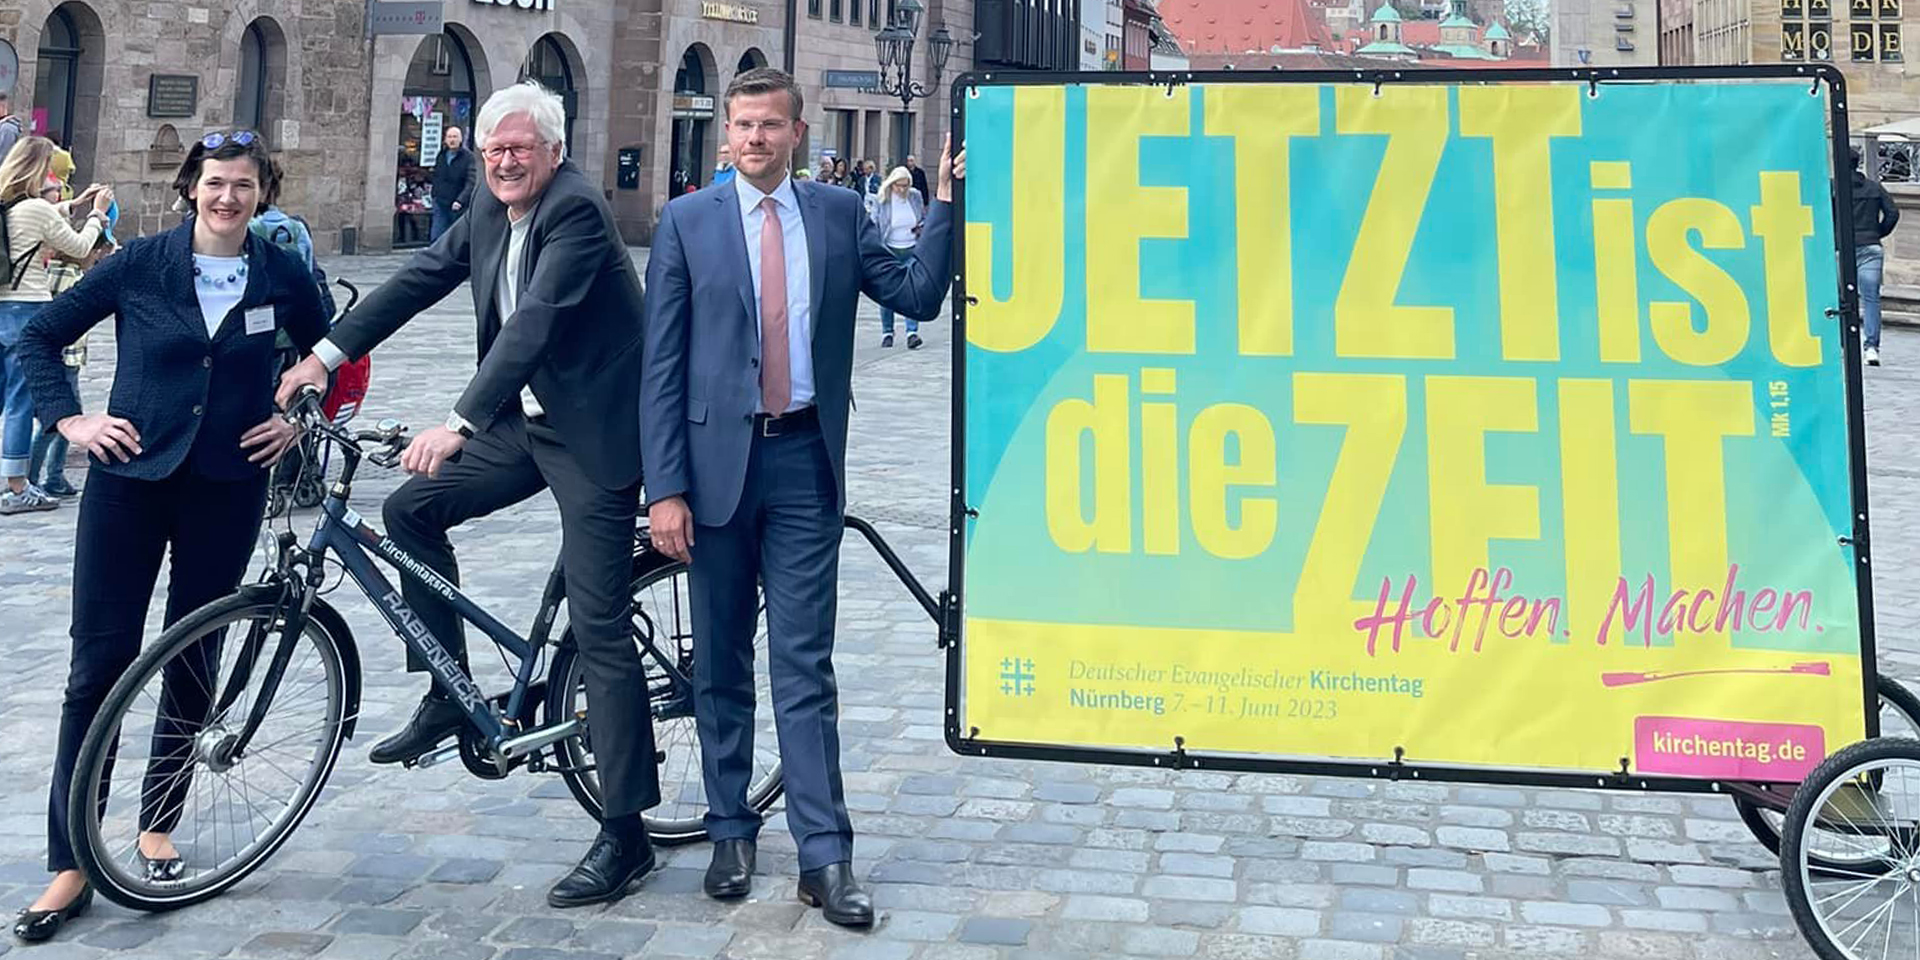 Kampagnenmotiv für den Deutschen Evangelischen Kirchentag 2023 in Nürnberg